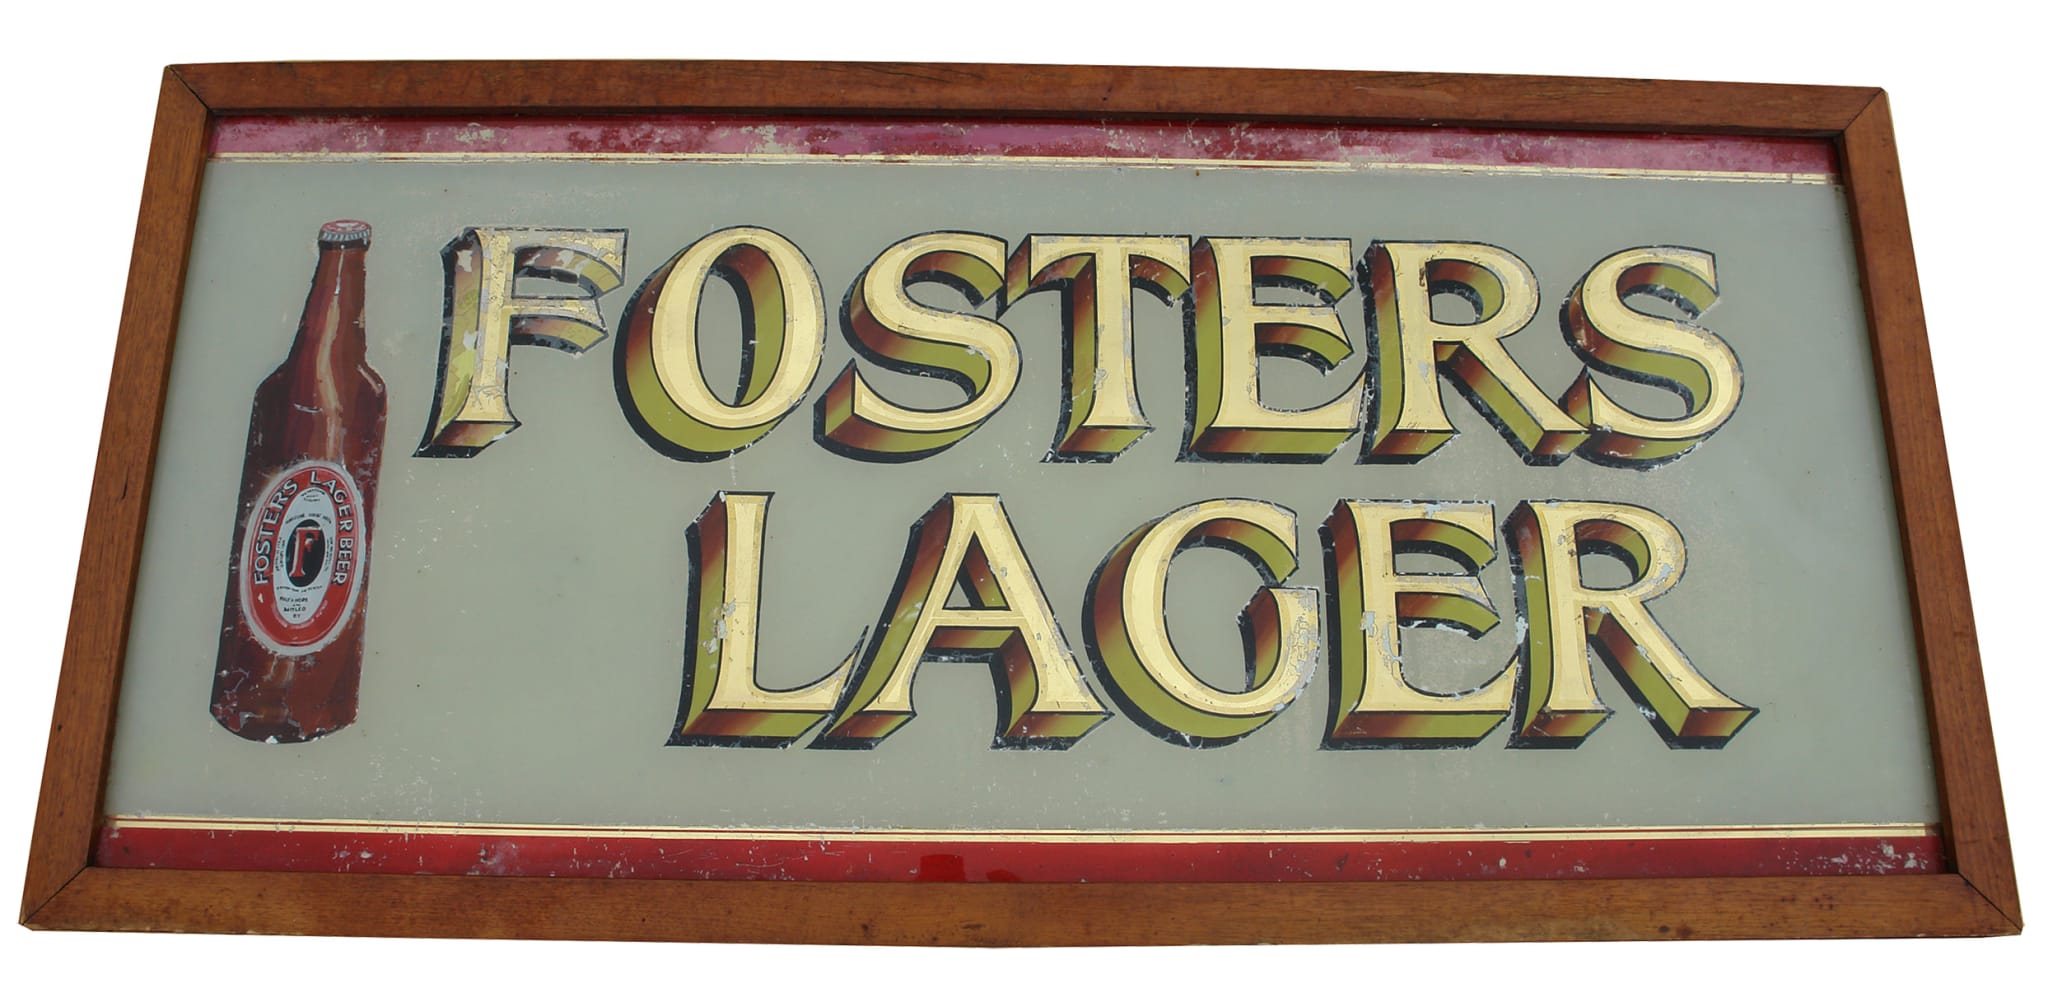 Fosters Lager Beer Vintage Advertising Mirror